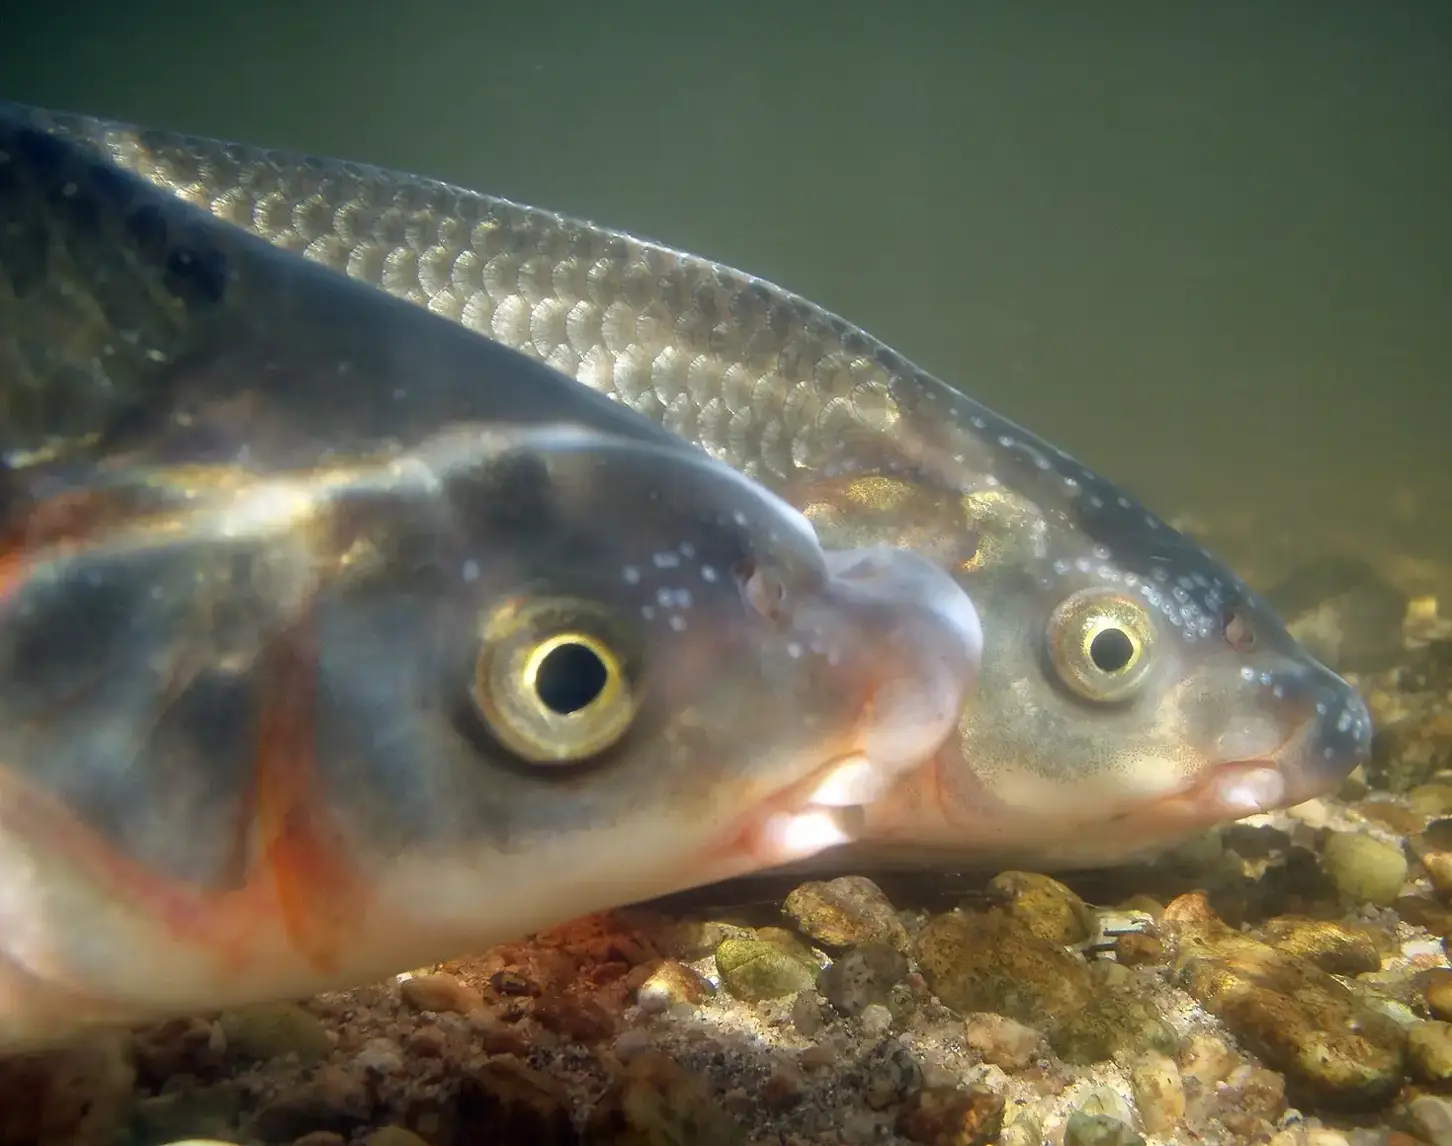 Die Nase ist ein gesellig lebender Fisch aus der großen Gruppe der Cypriniden.